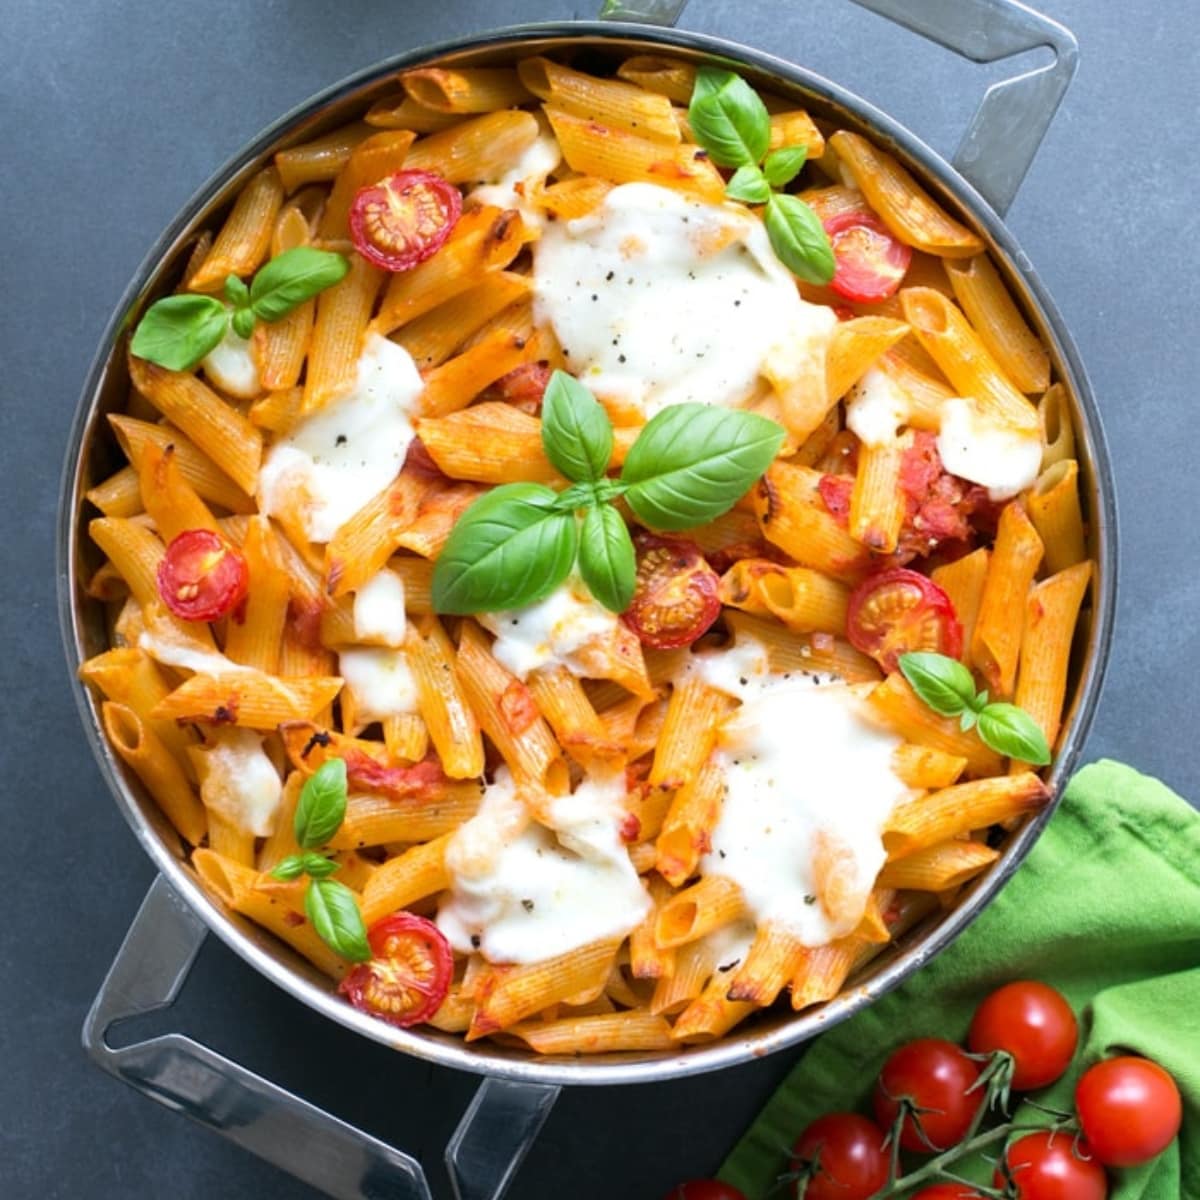 caprese pasta bake with tomato and mozzarella.